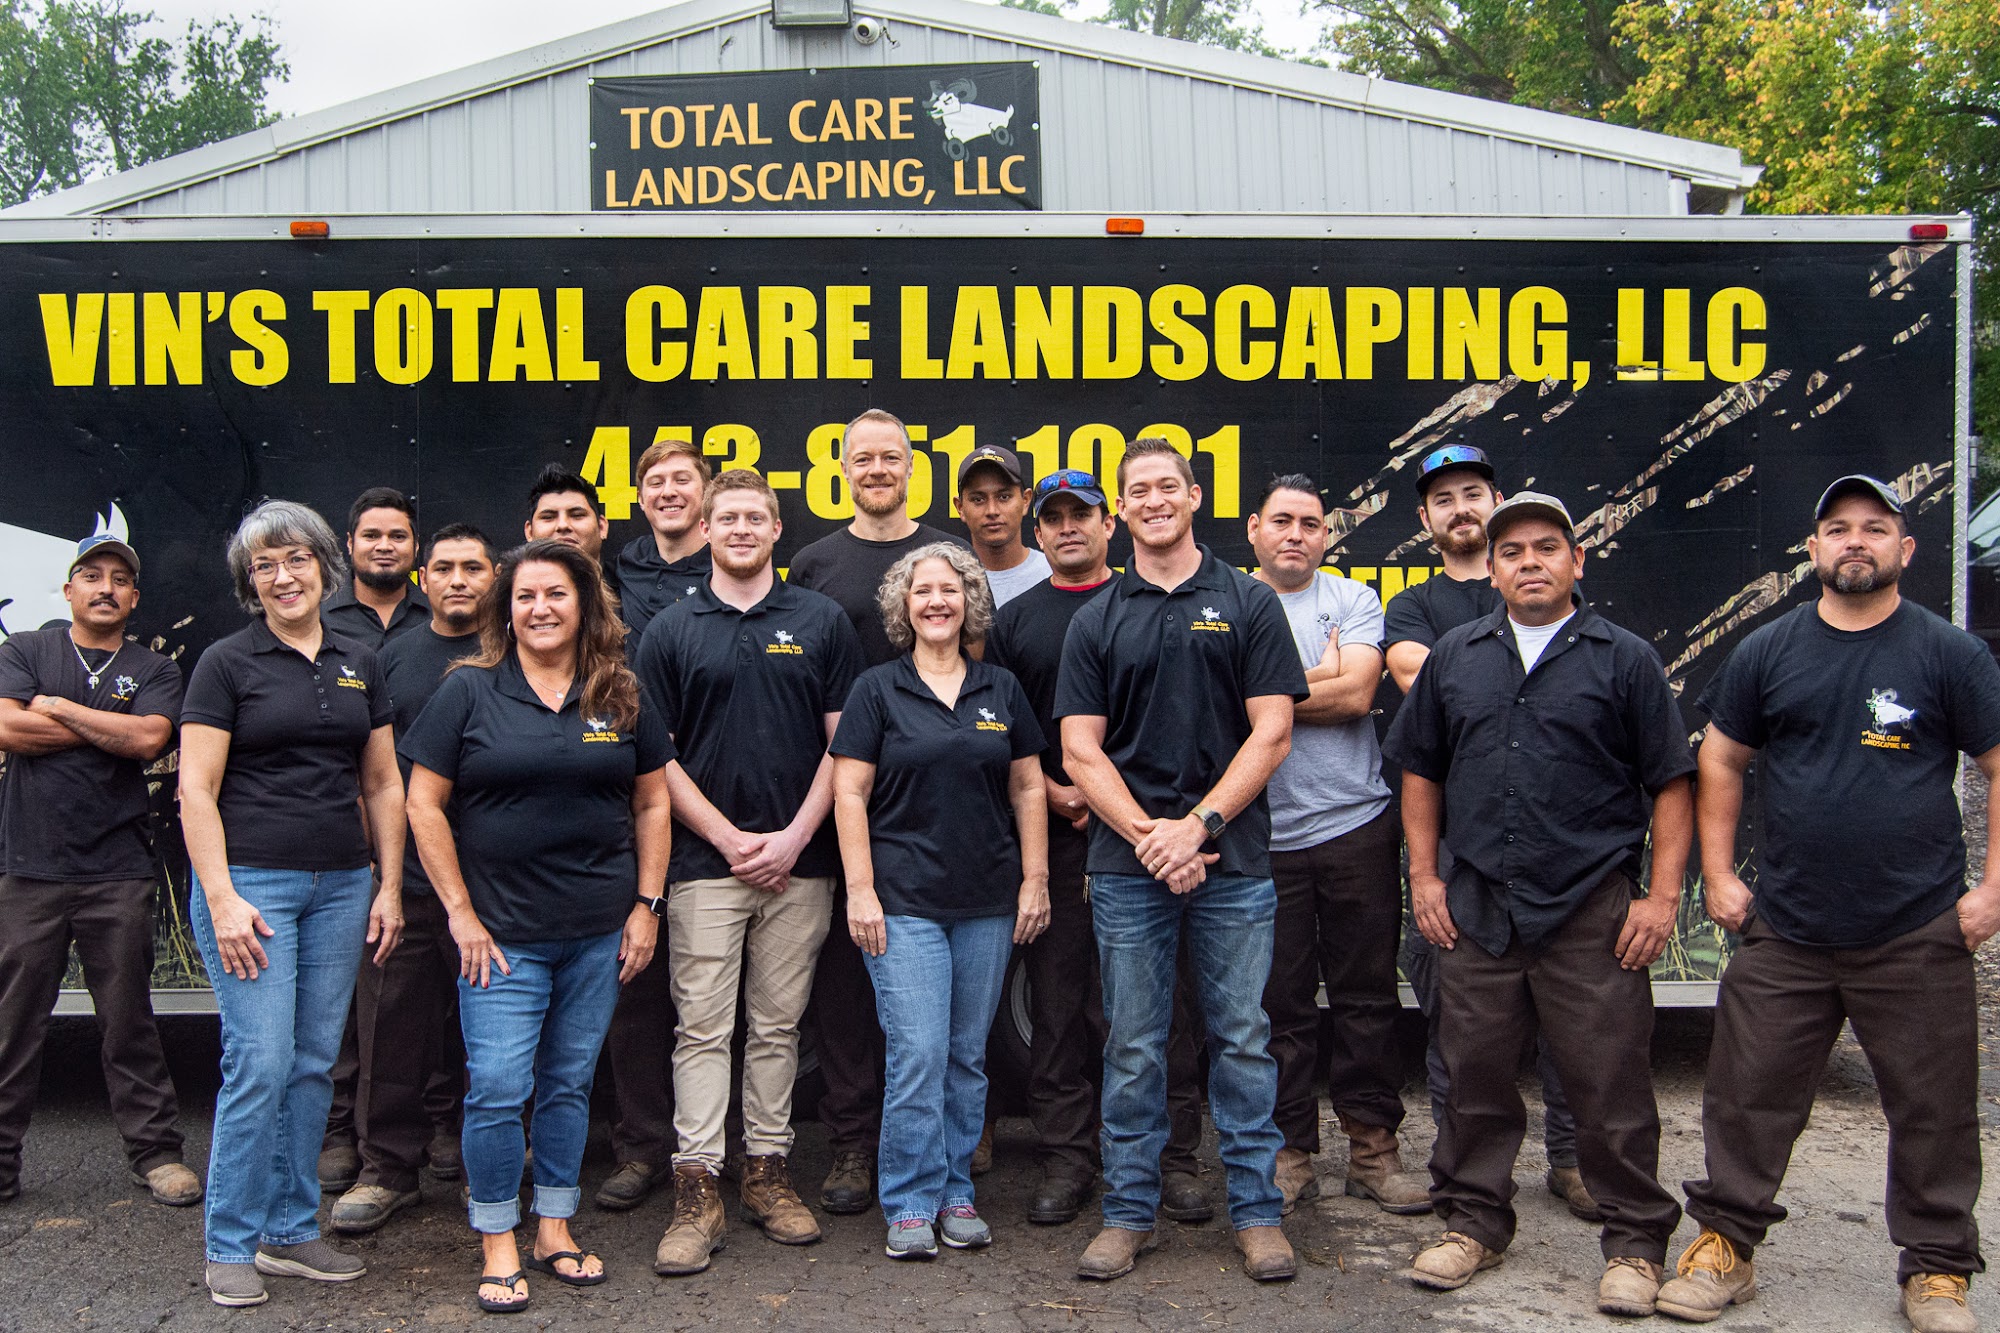 Vin's Total Care Landscaping, LLC